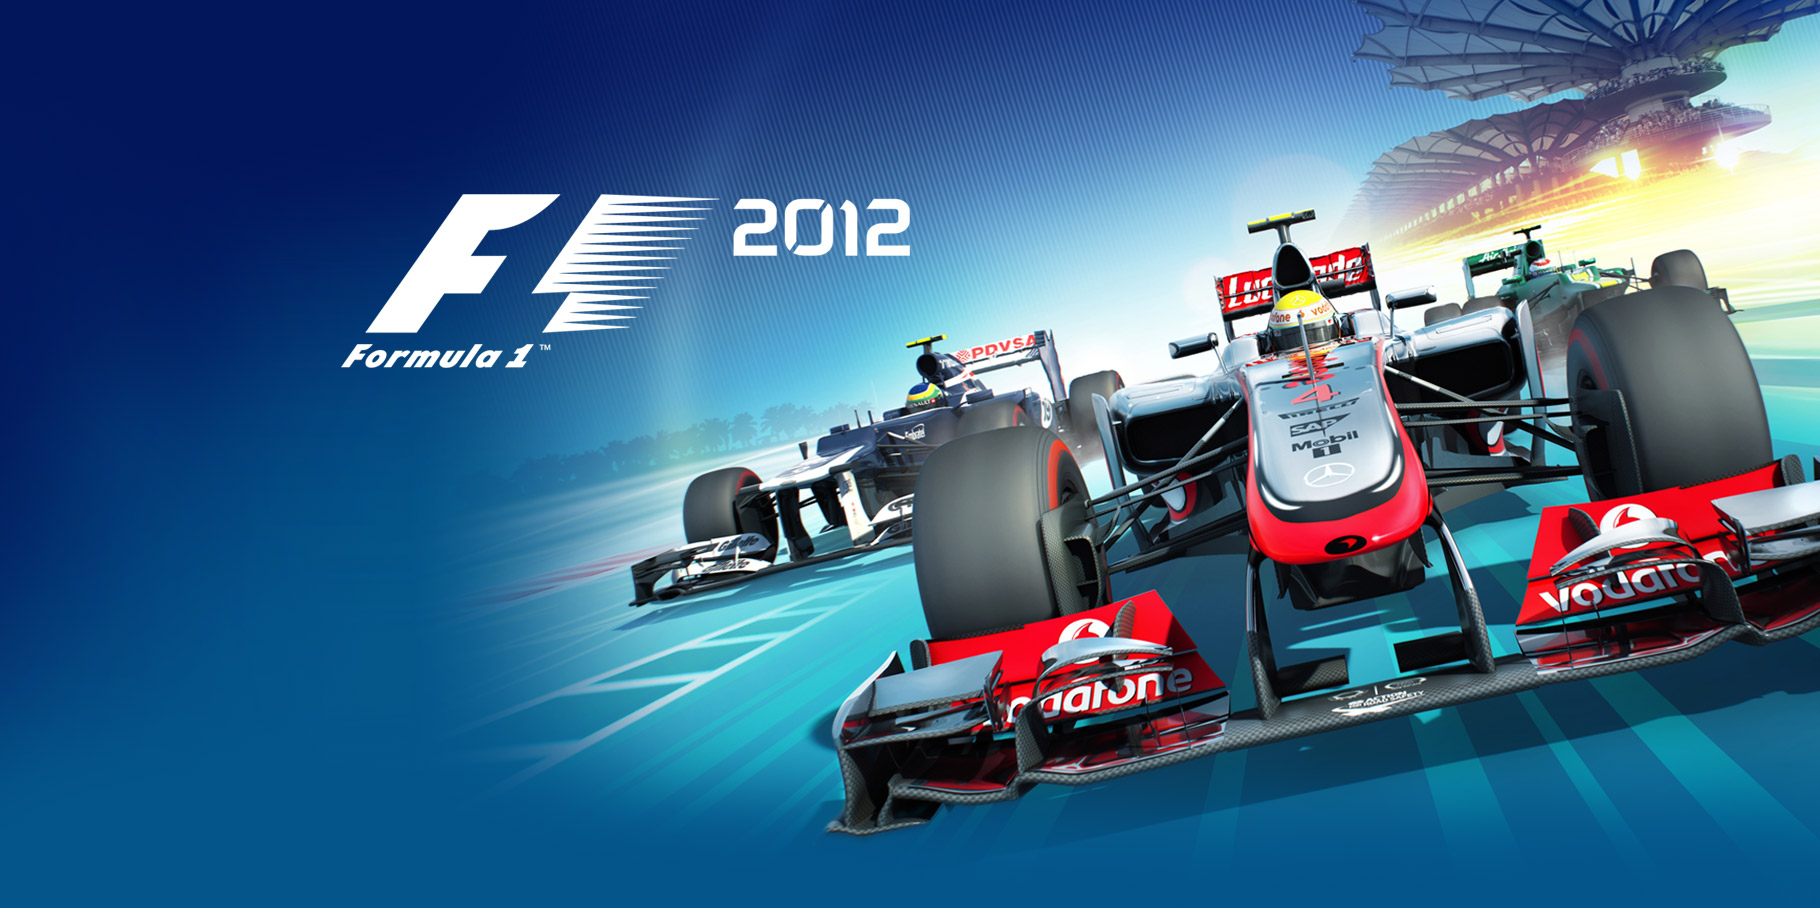 Artwork for F1 2012